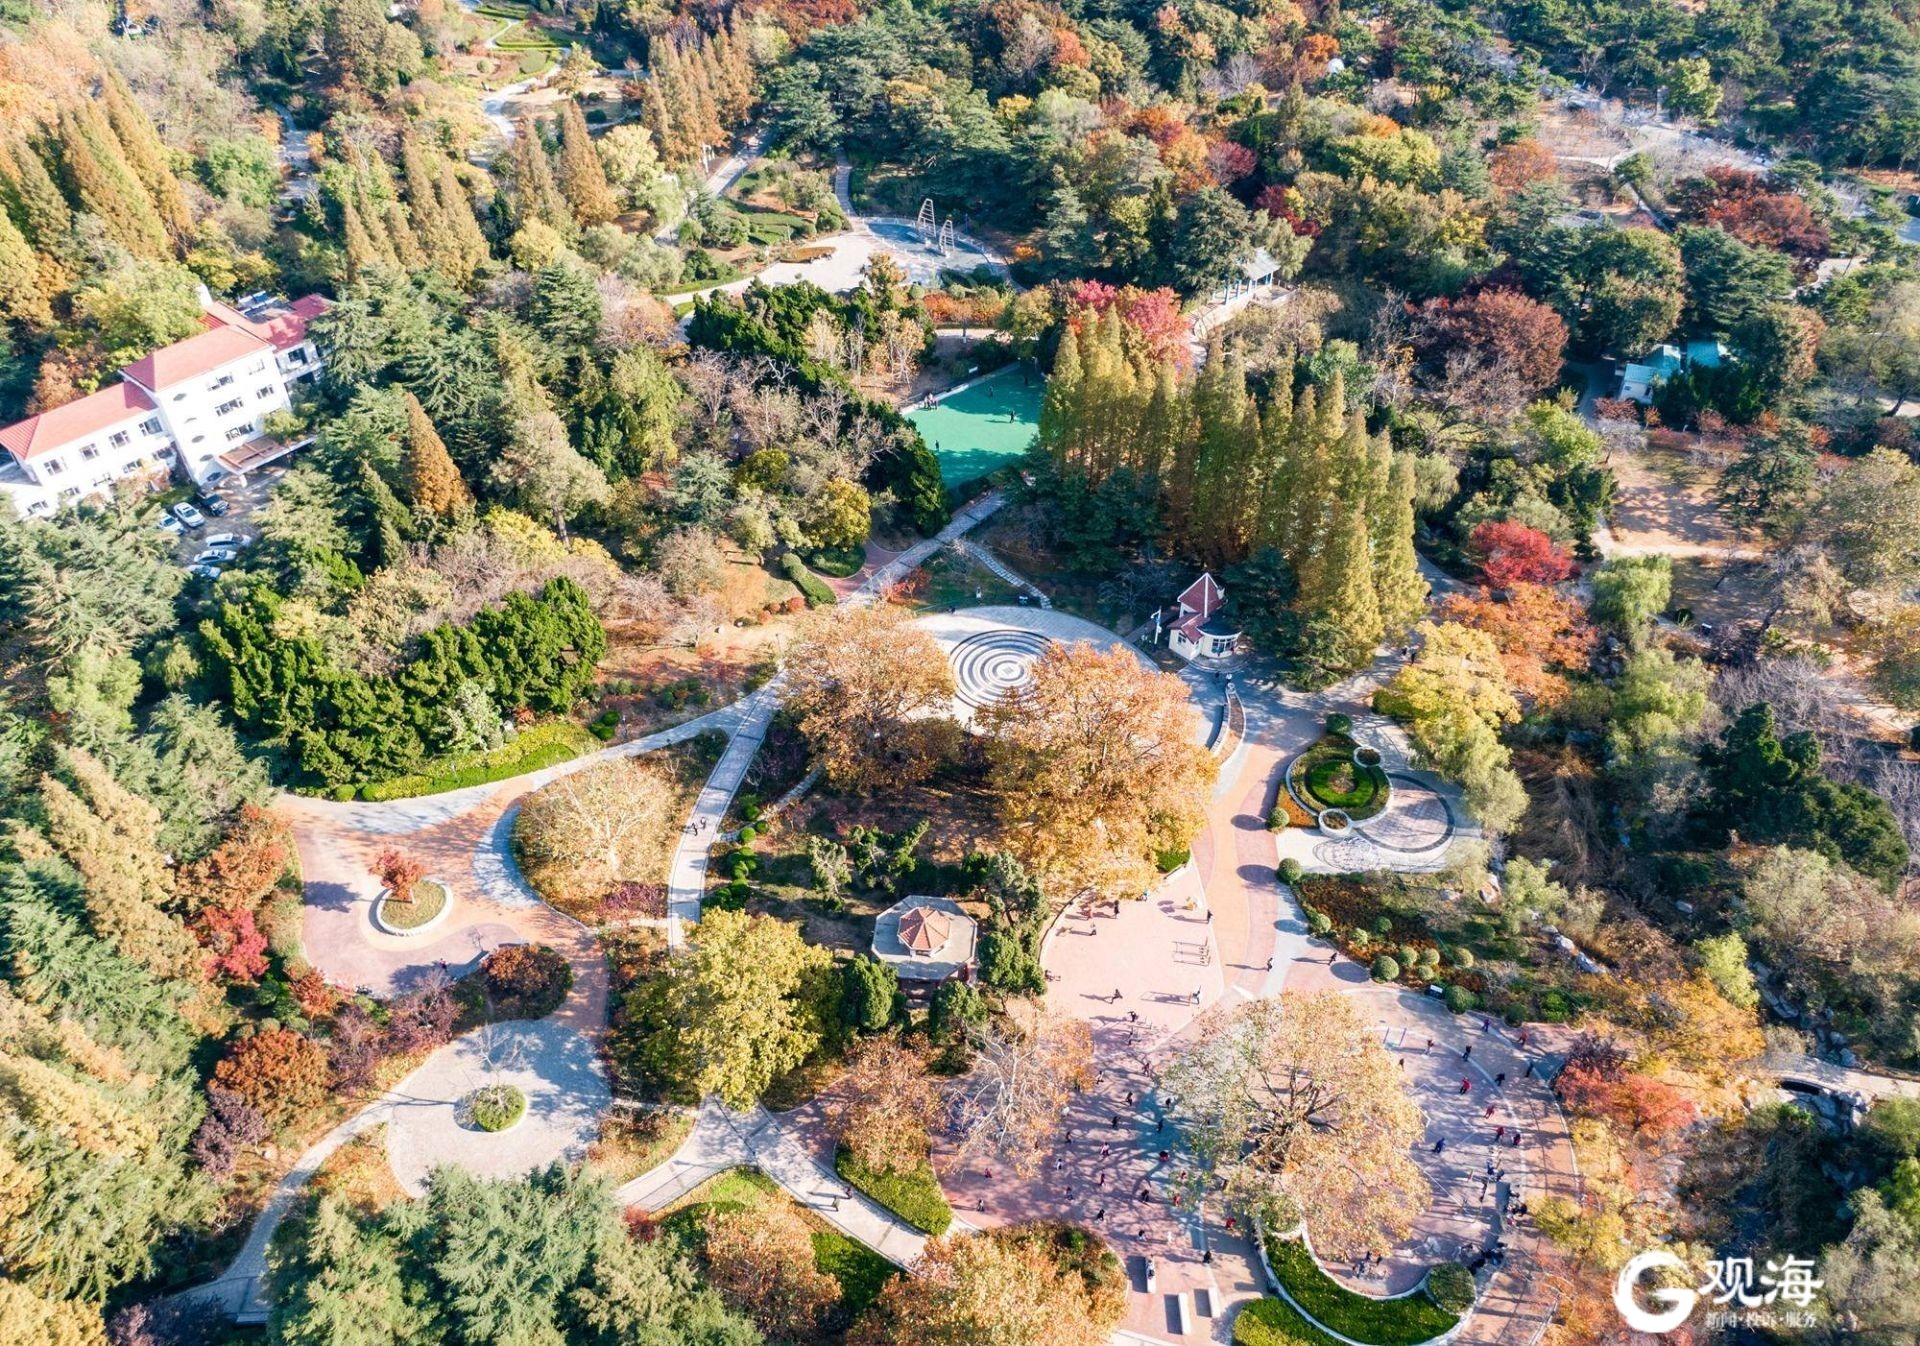 太平山浮山森林公园4月27日正式对市民开放